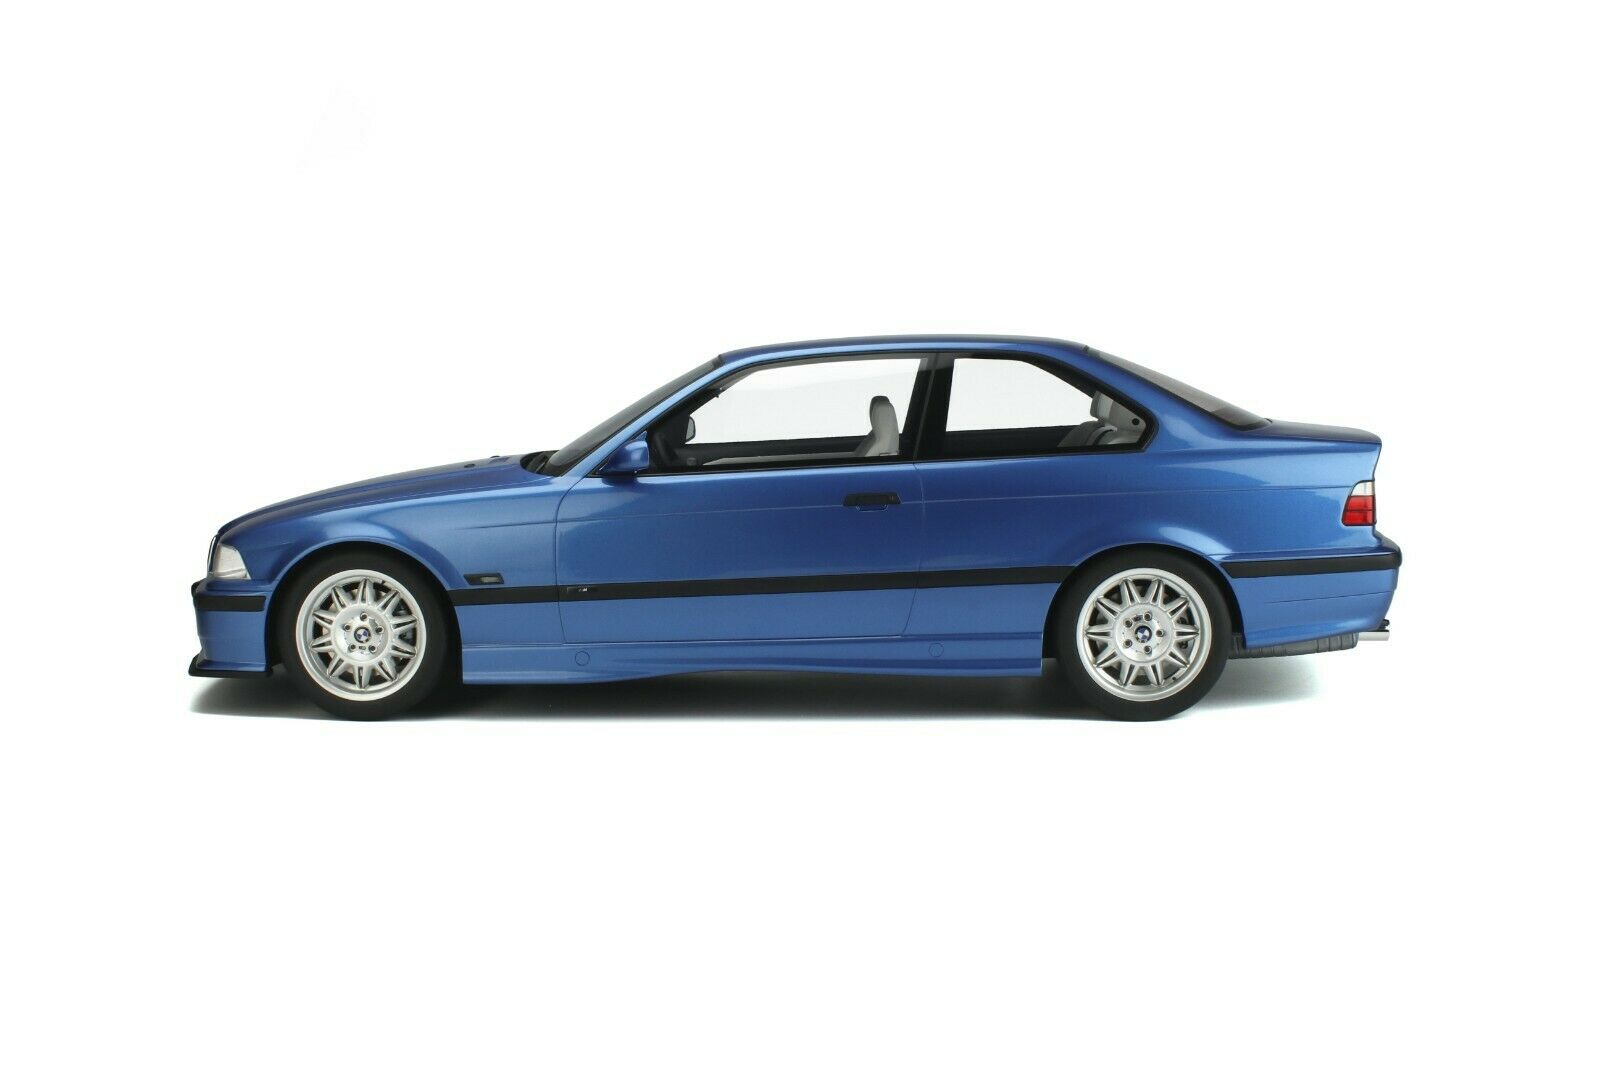 BMW - E36 M3 Coupe - 1995 - Catawiki